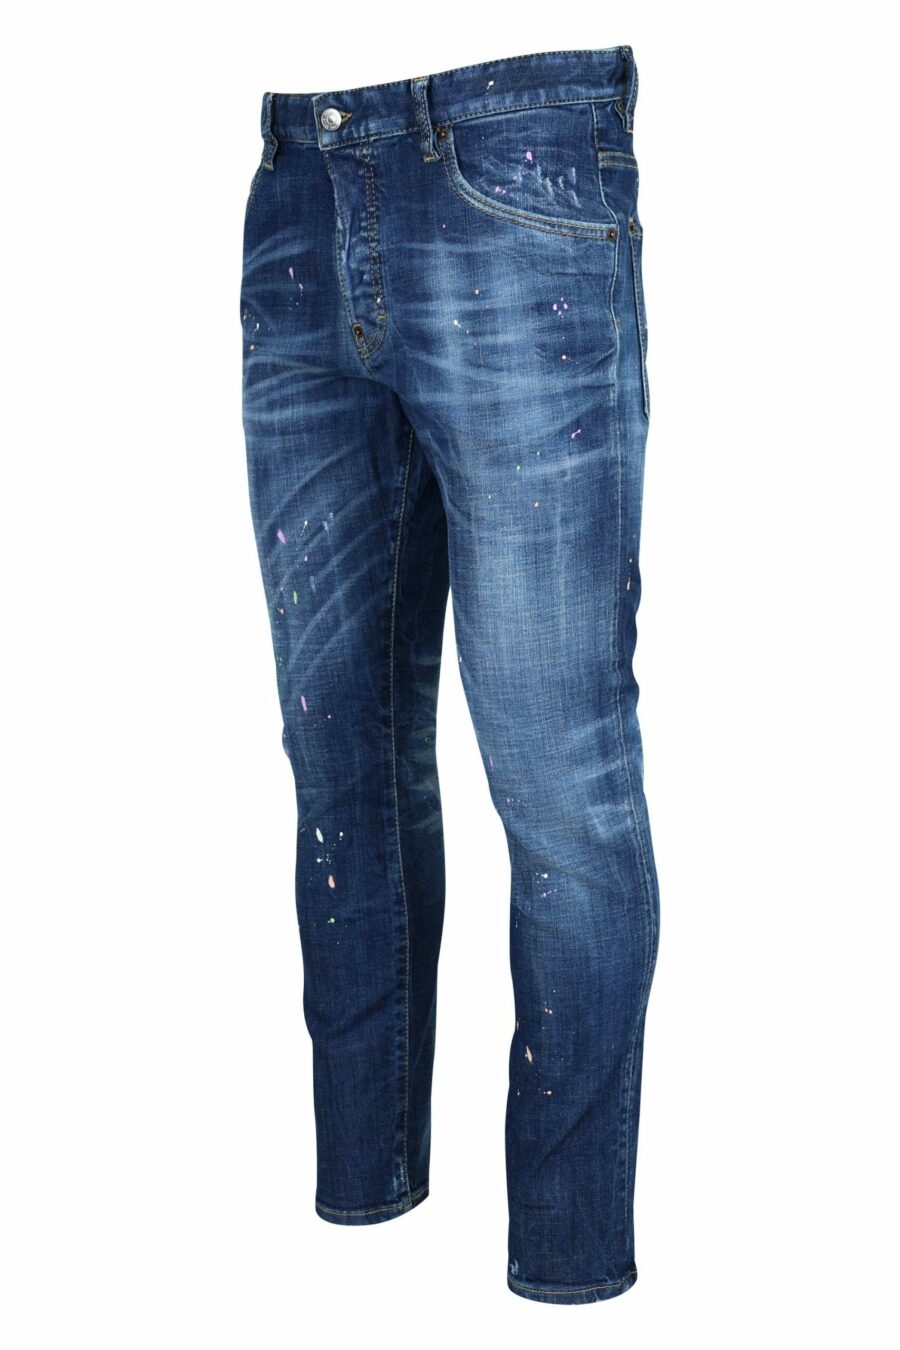 Pantalón vaquero azul oscuro "skater jean" con pintura blanca - 8054148527457 1 scaled